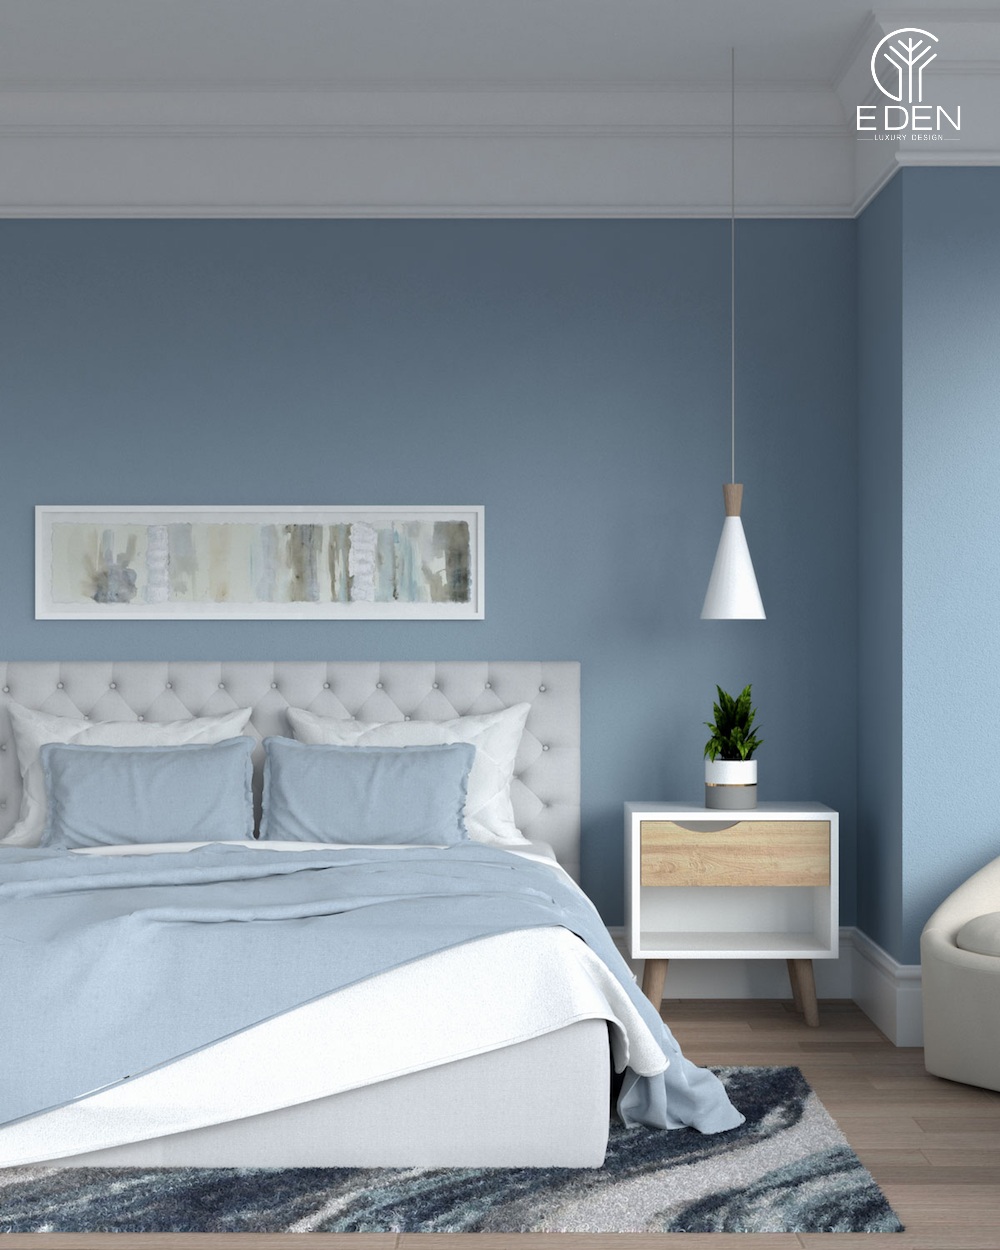 Gam màu xanh dịu dàng được ưa chuộng để decor, trang trí phòng ngủ